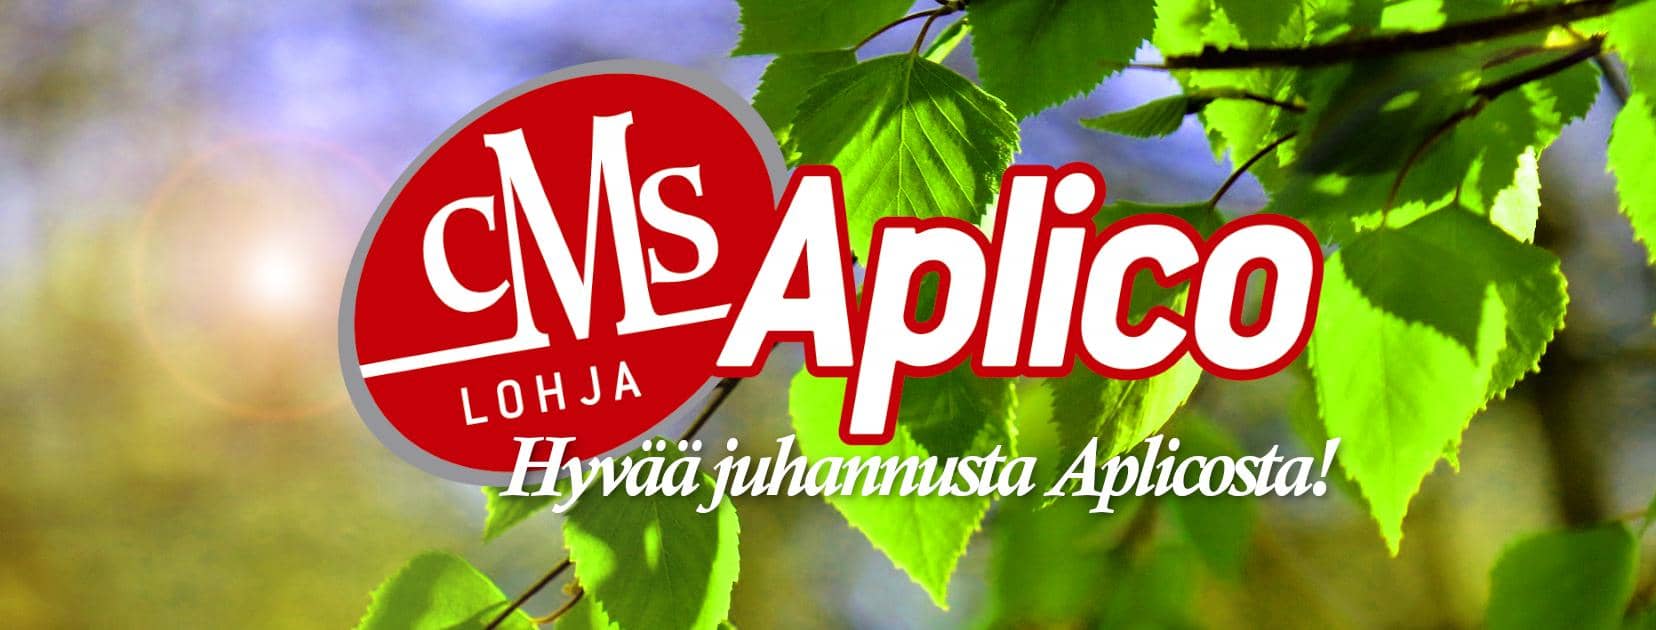 Aplicon juhannus - Aplico